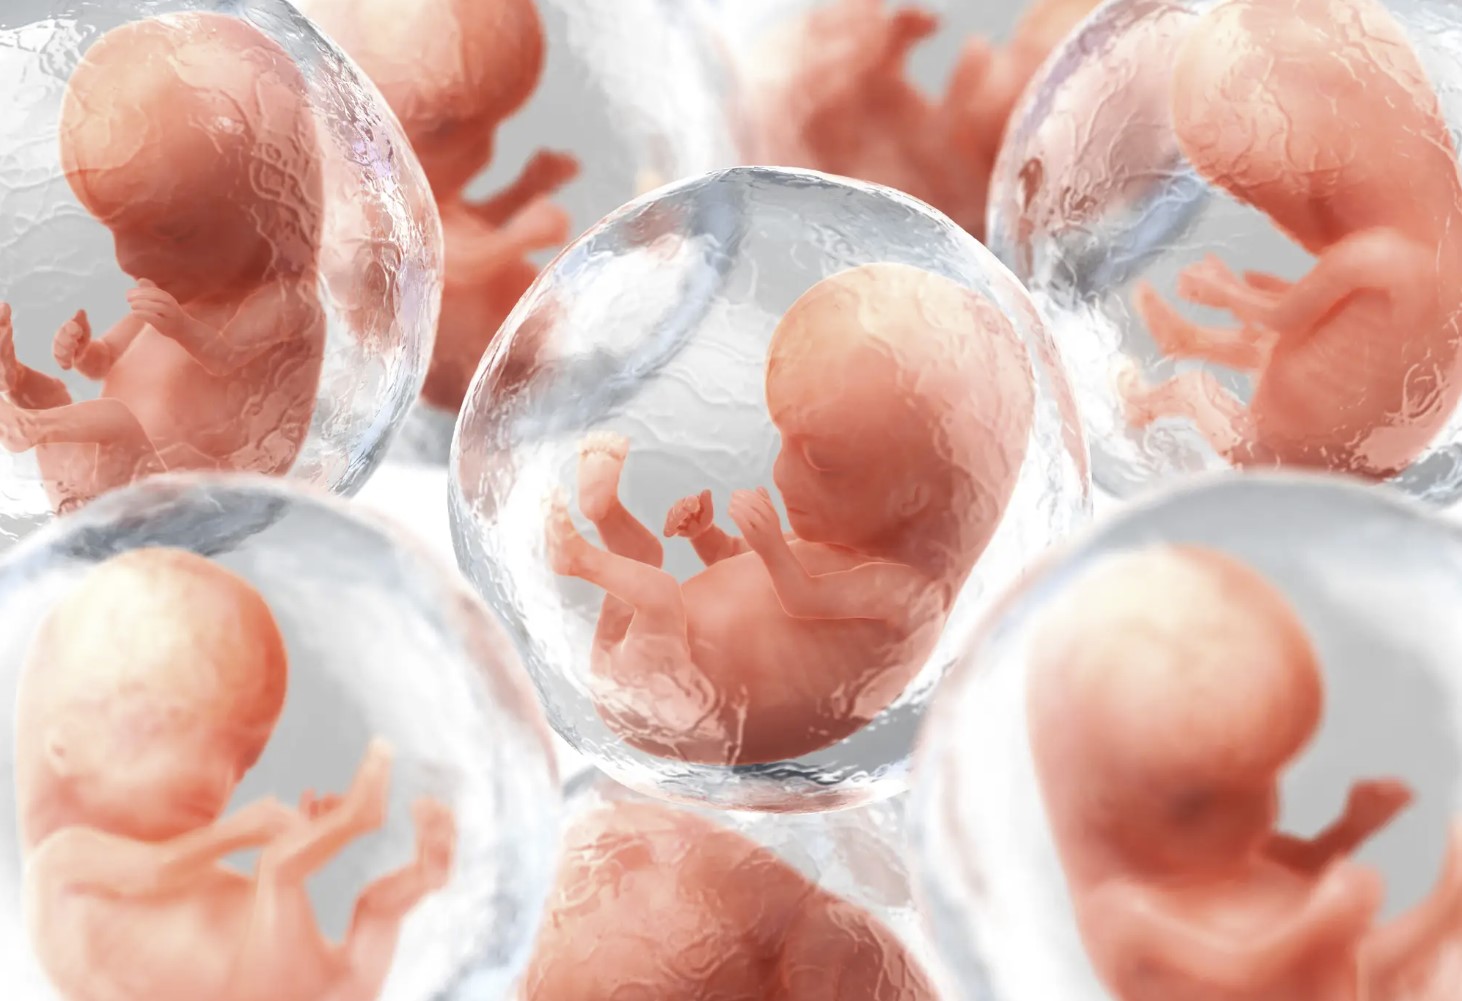 Биотехнологическая компания возьмет человеческую ДНК и создаст искусственные эмбрионы, используемые для забора органов для медицинских трансплантаций